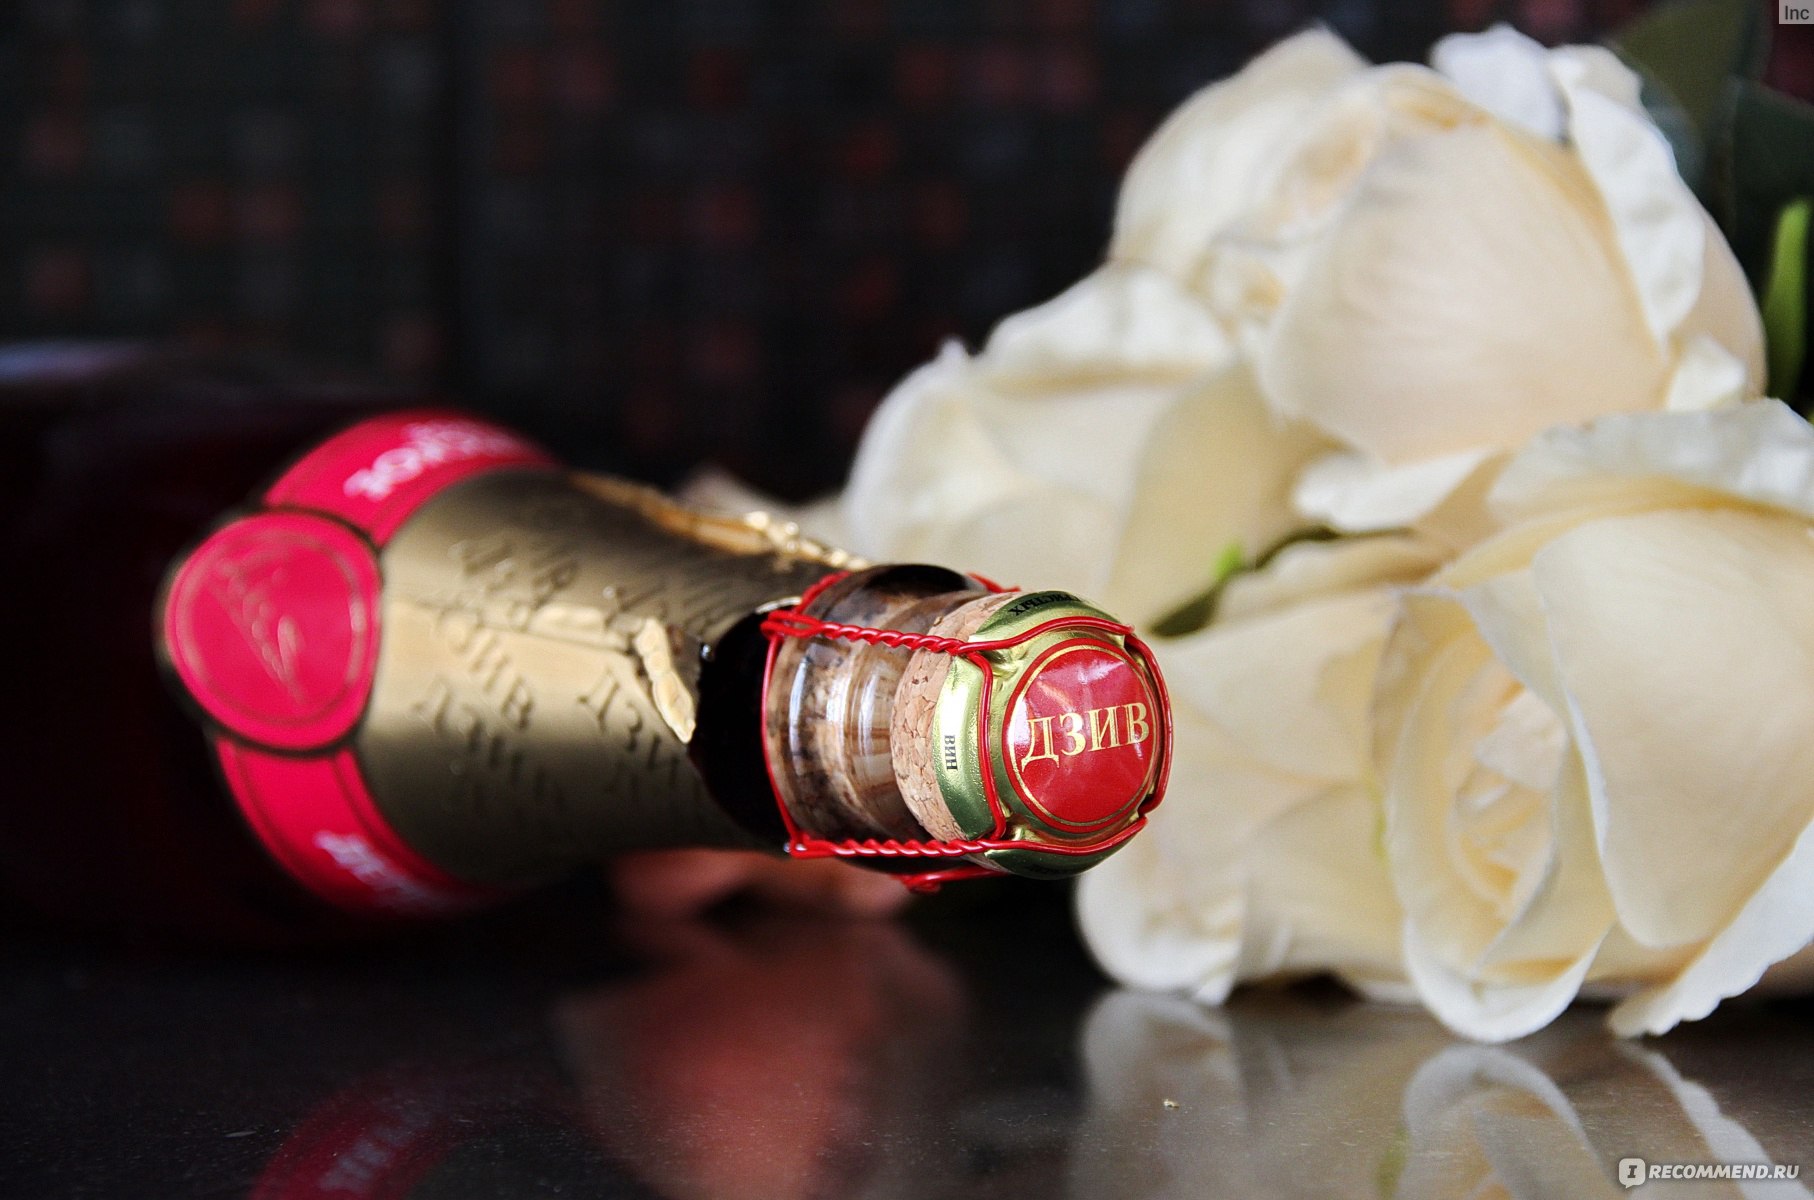 Сколько глав в шампанское и розы. Шампанское и розы. Шампанское и розы фото. Шампанское и розы персонажи.